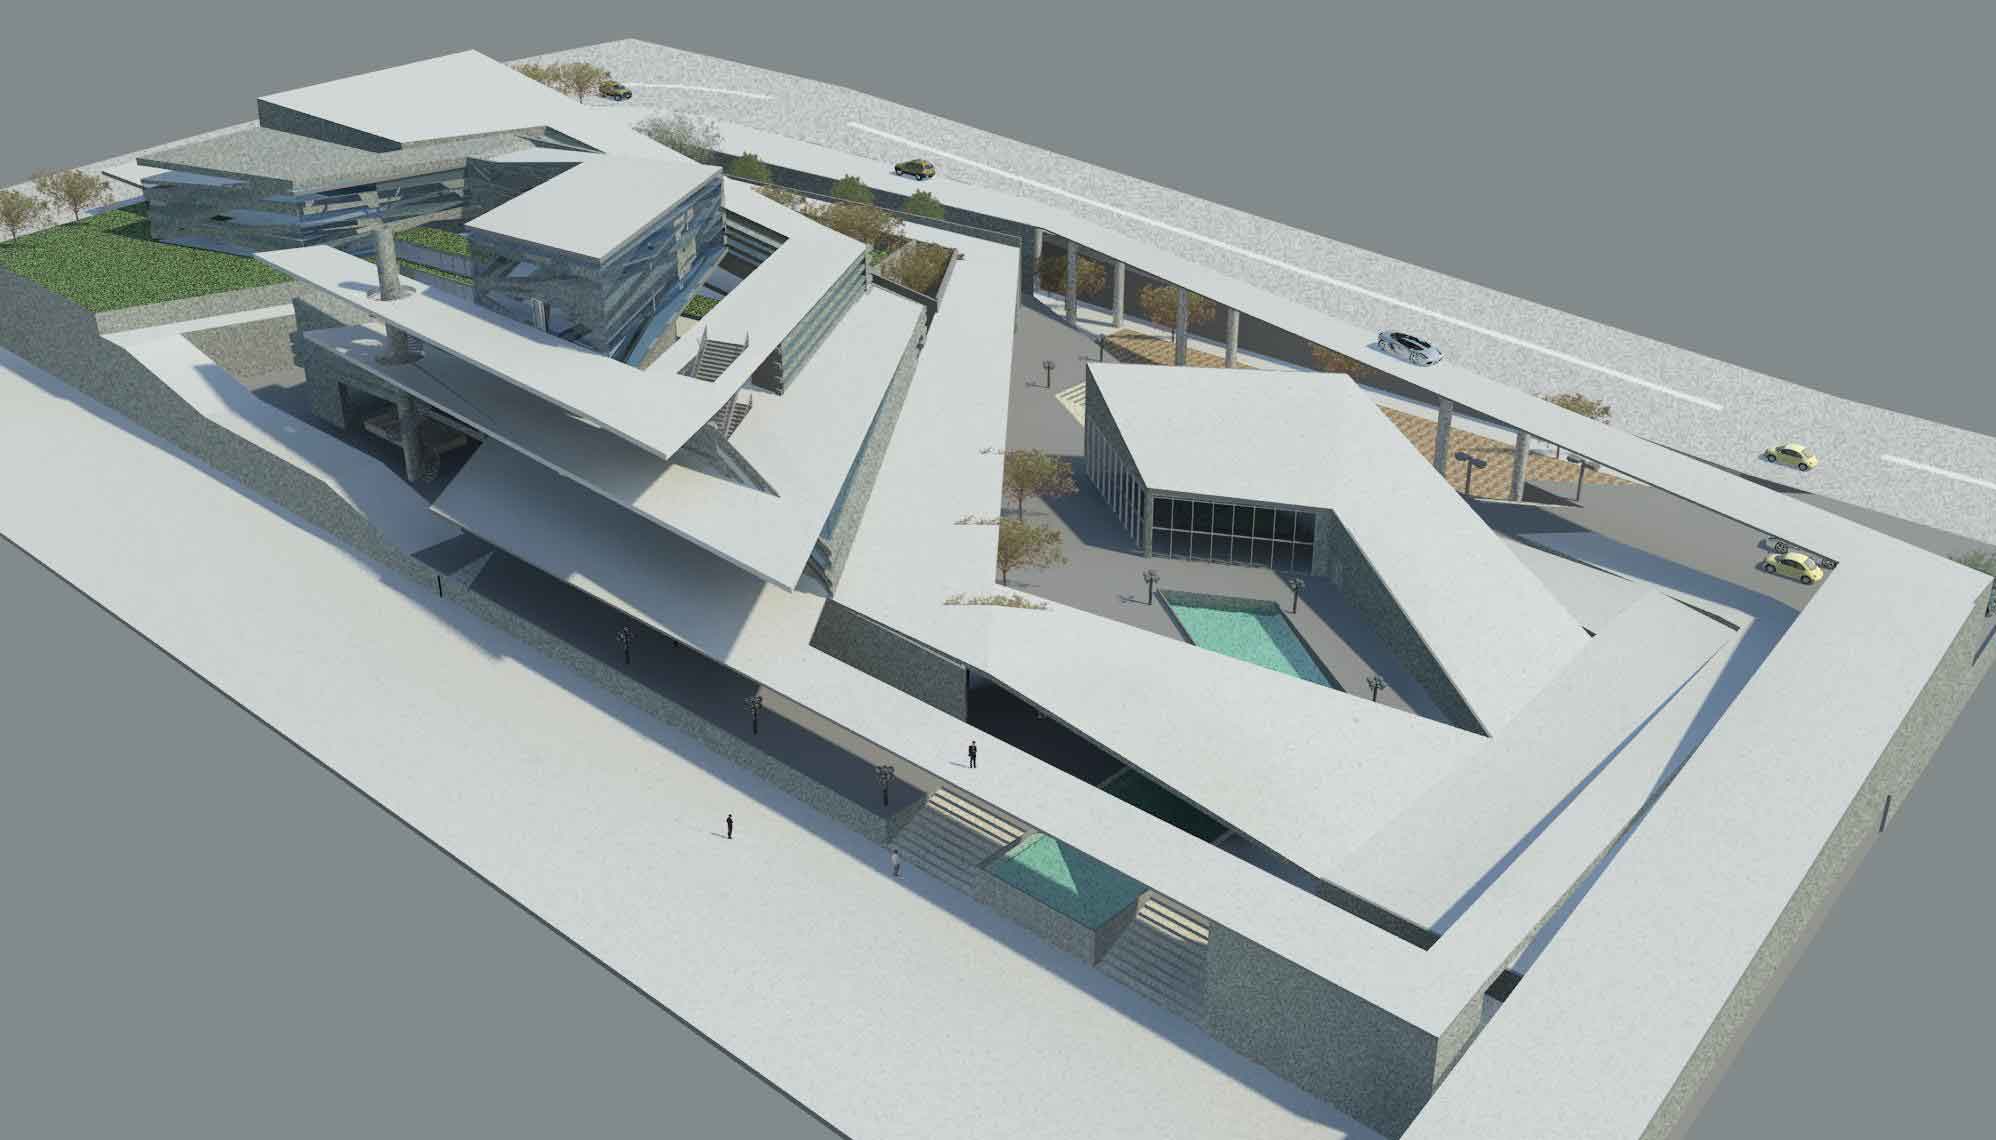 دانلود پروژه معماری موزه هنر2 - دانلود پروژه معماری موزه هنر - به همراه نقشه ، سه بعدی و جزئیات